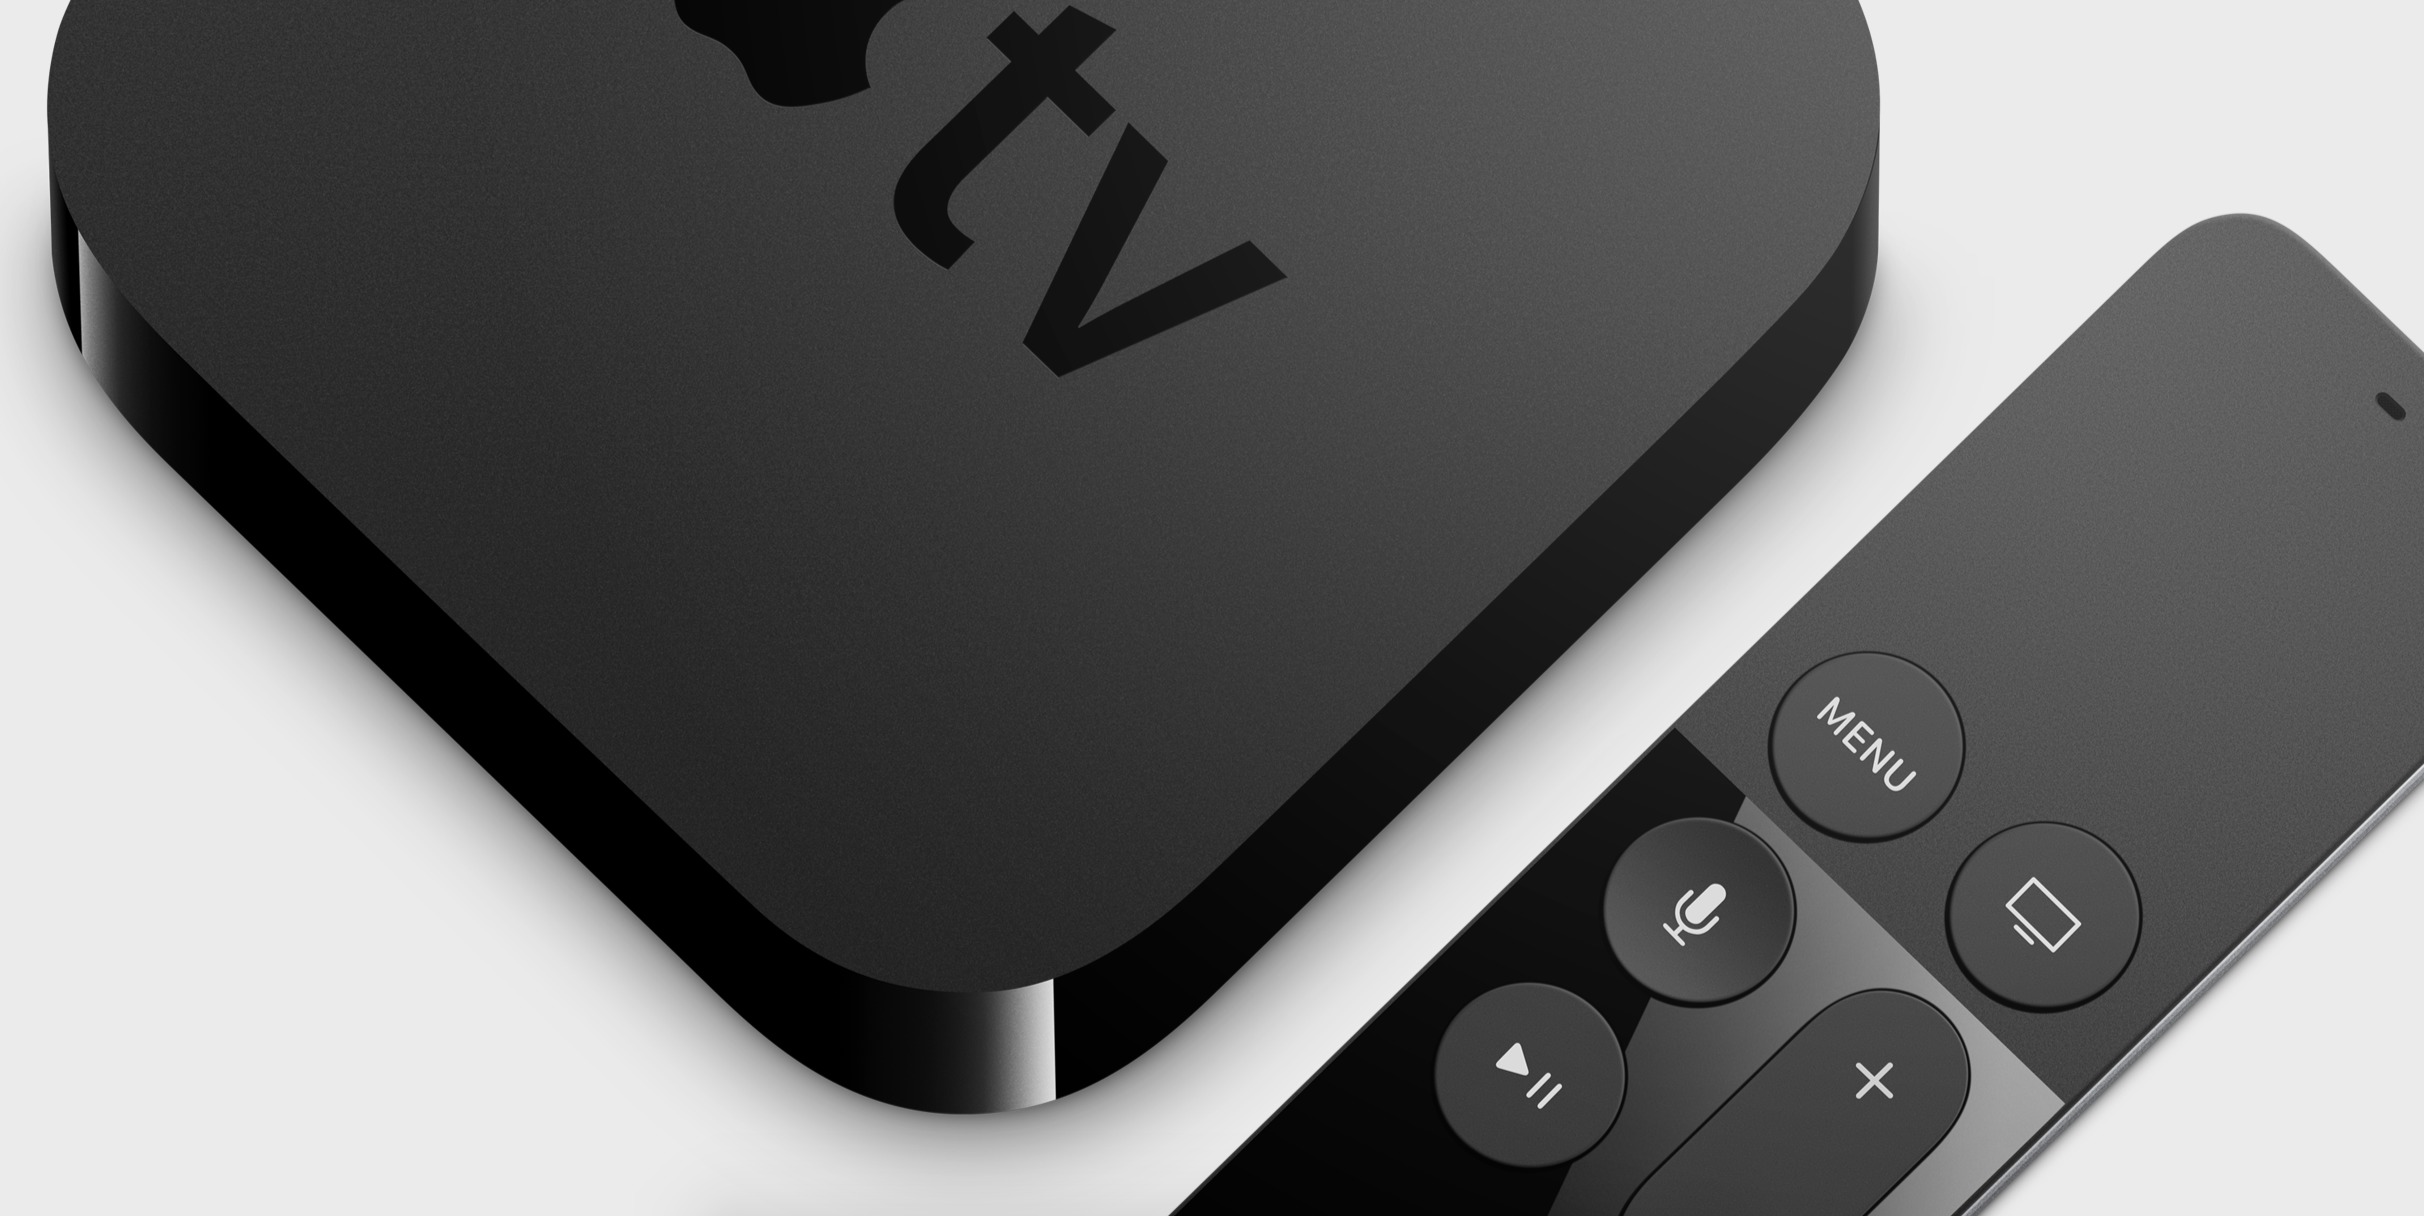 Apple TV 4 er en stor forbedring av underholdningsboksen fra Apple. Selv om den er dyrere enn mange av konkurrentene mener vi den er verdt pengene grunnet grensesnittet, fjernkontrollen og app-kvaliteten.